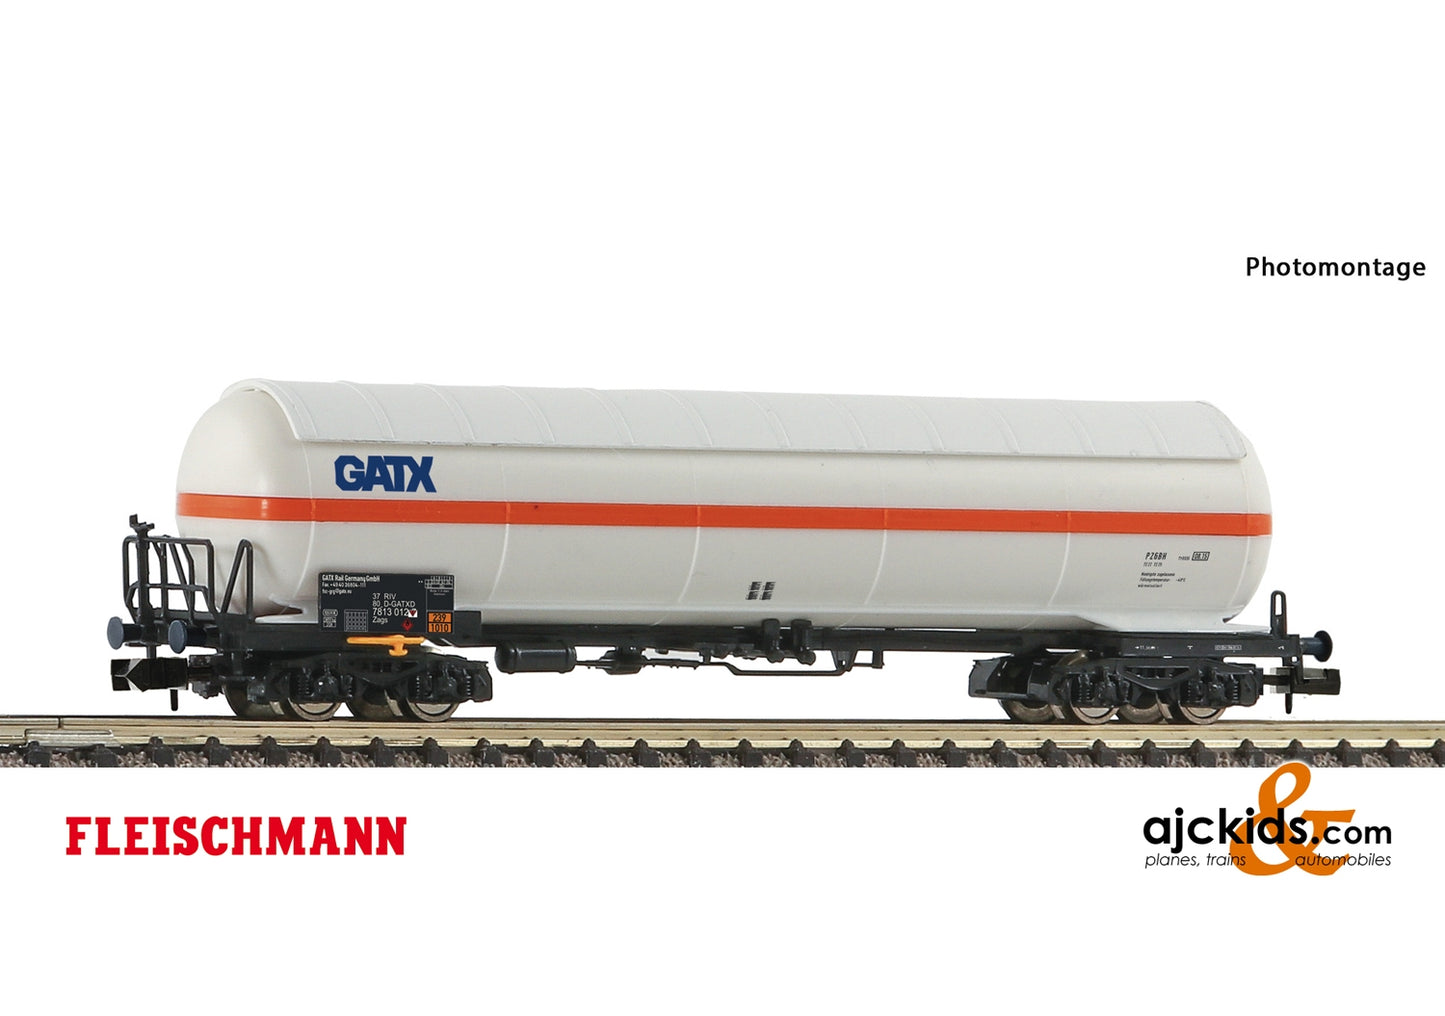 Fleischmann 849111 - Pressurised gas tank wagon Display 849110 #1